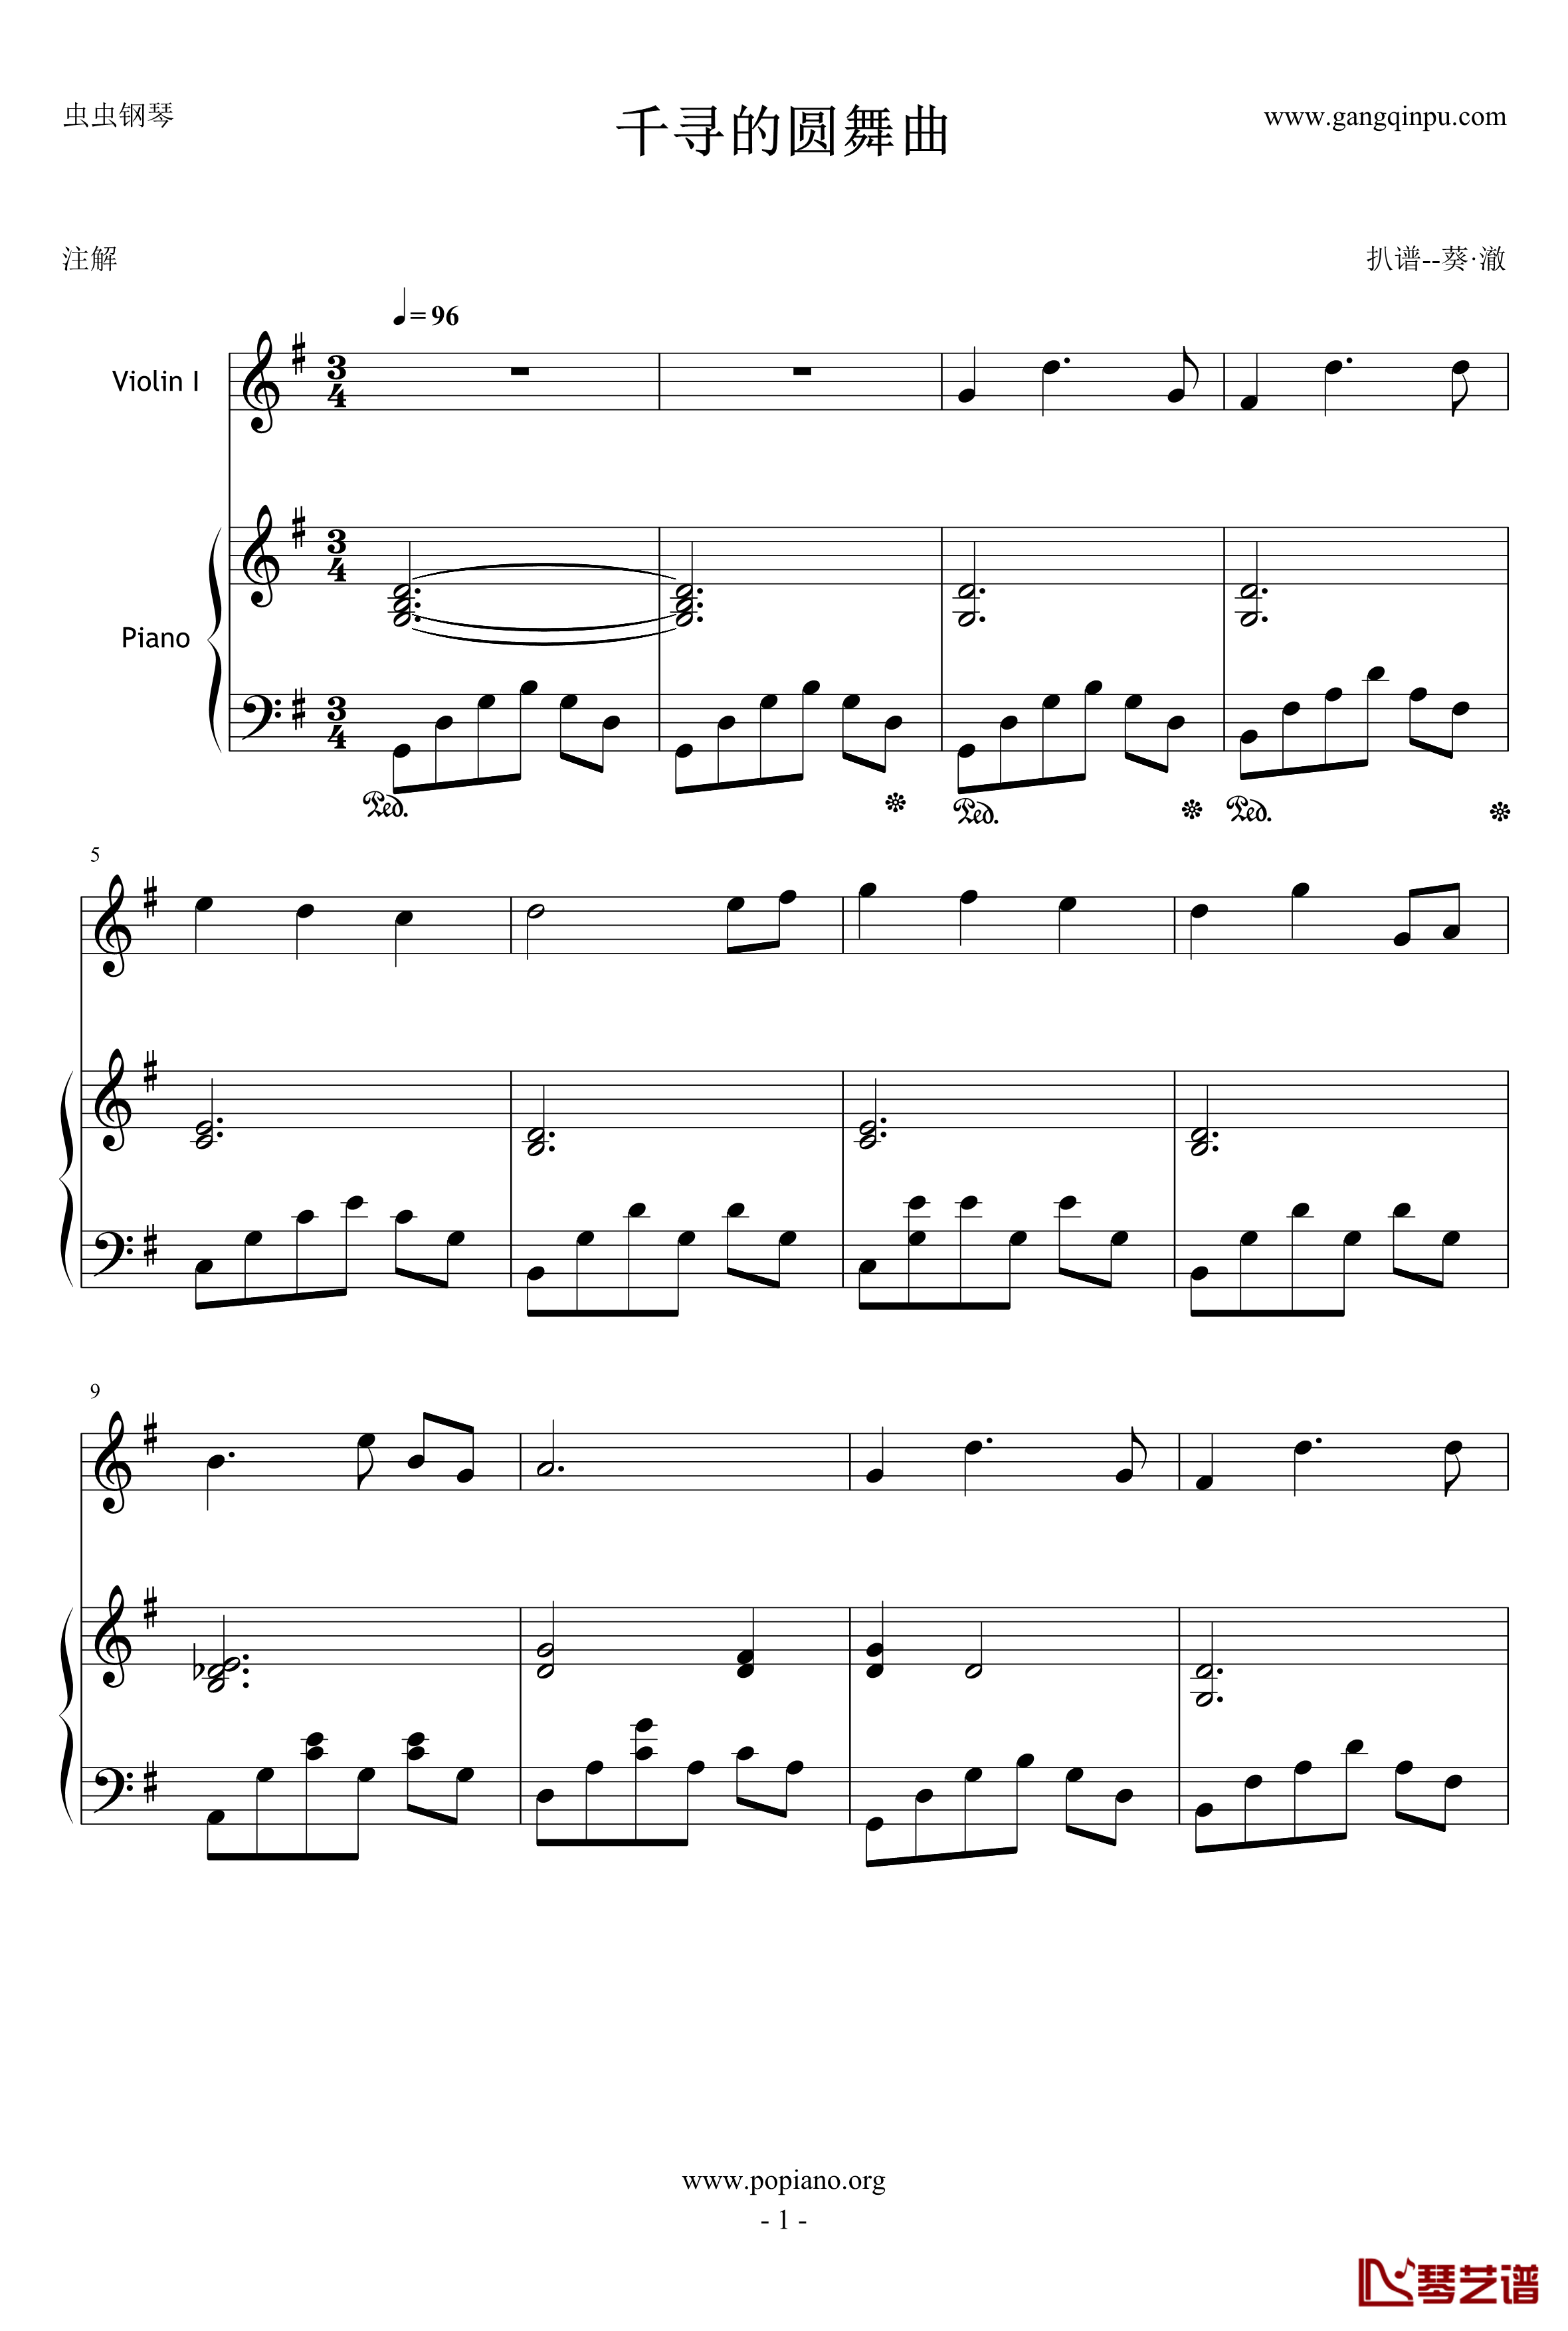 千寻的圆舞曲钢琴谱-钢琴+小提琴版-千与千寻1